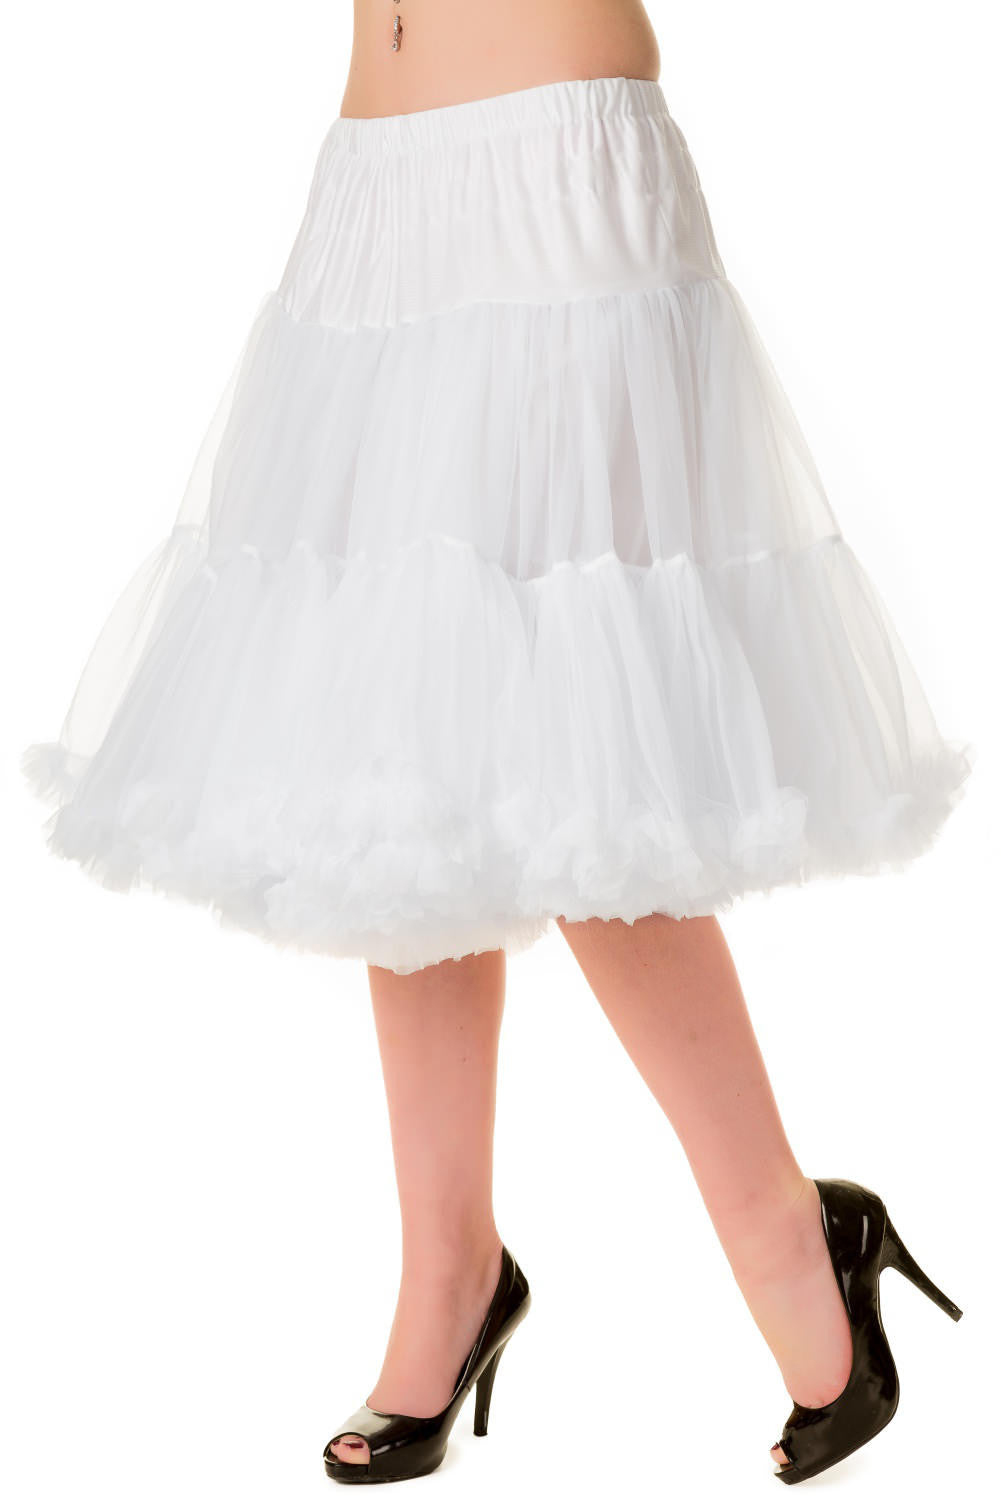 Starlite Petticoat in White - Natasha Marie Clothing